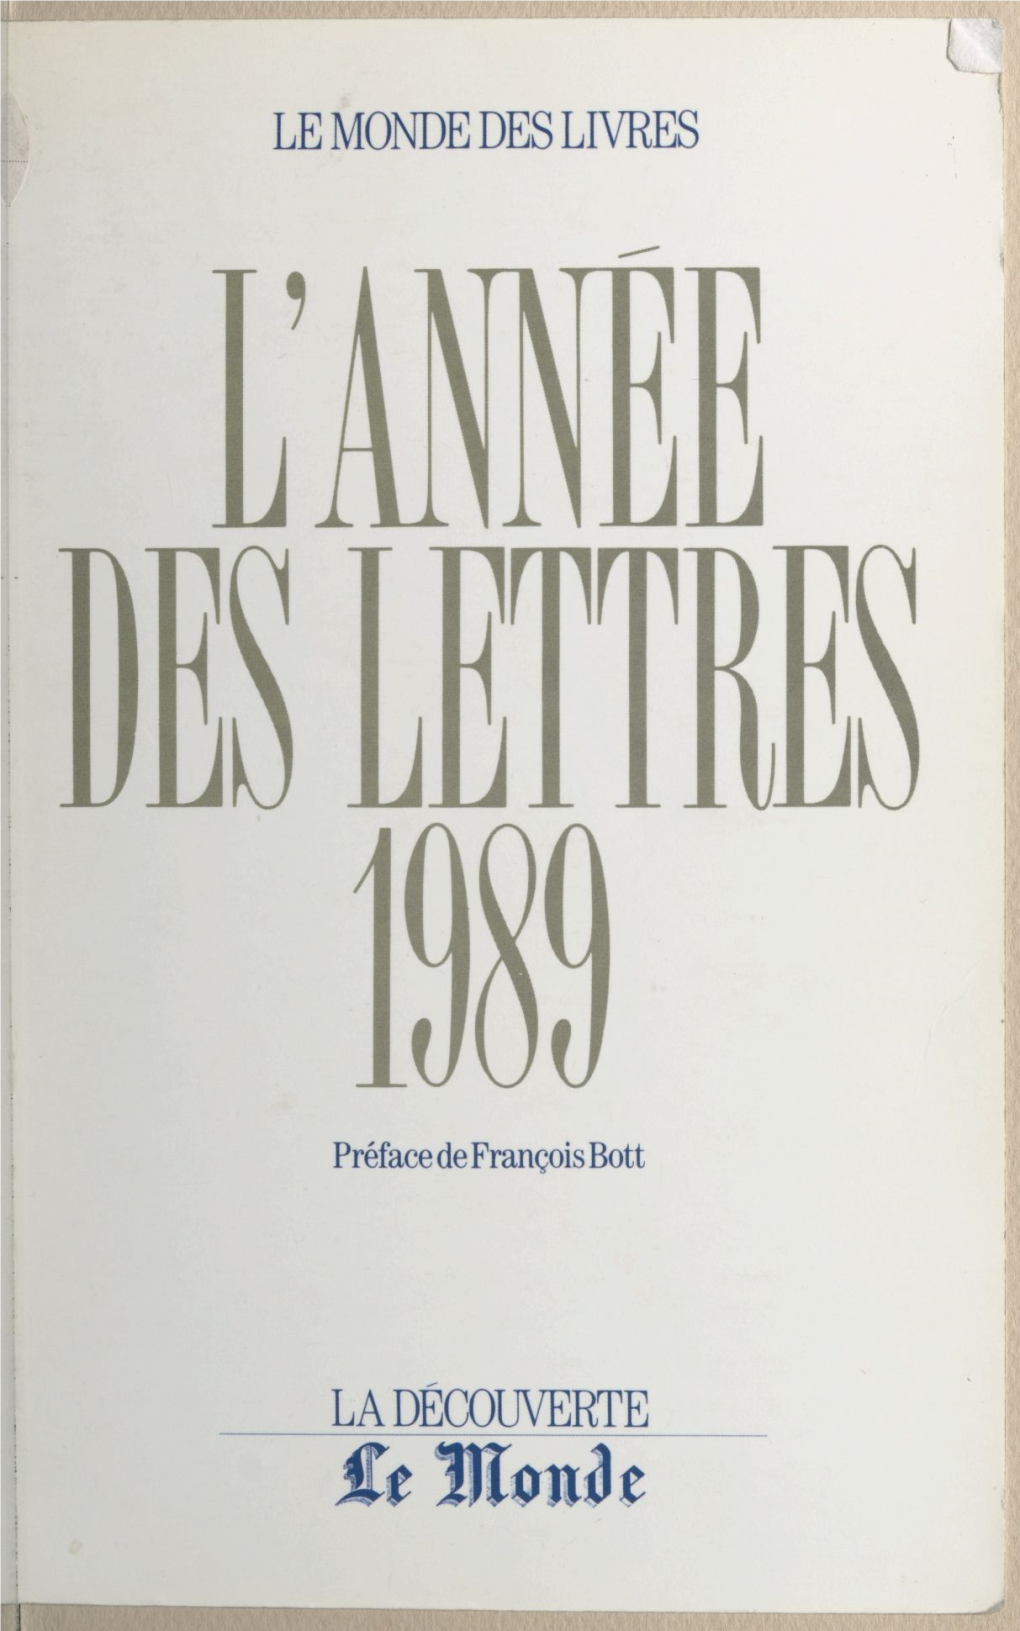 L'année Des Lettres 1989